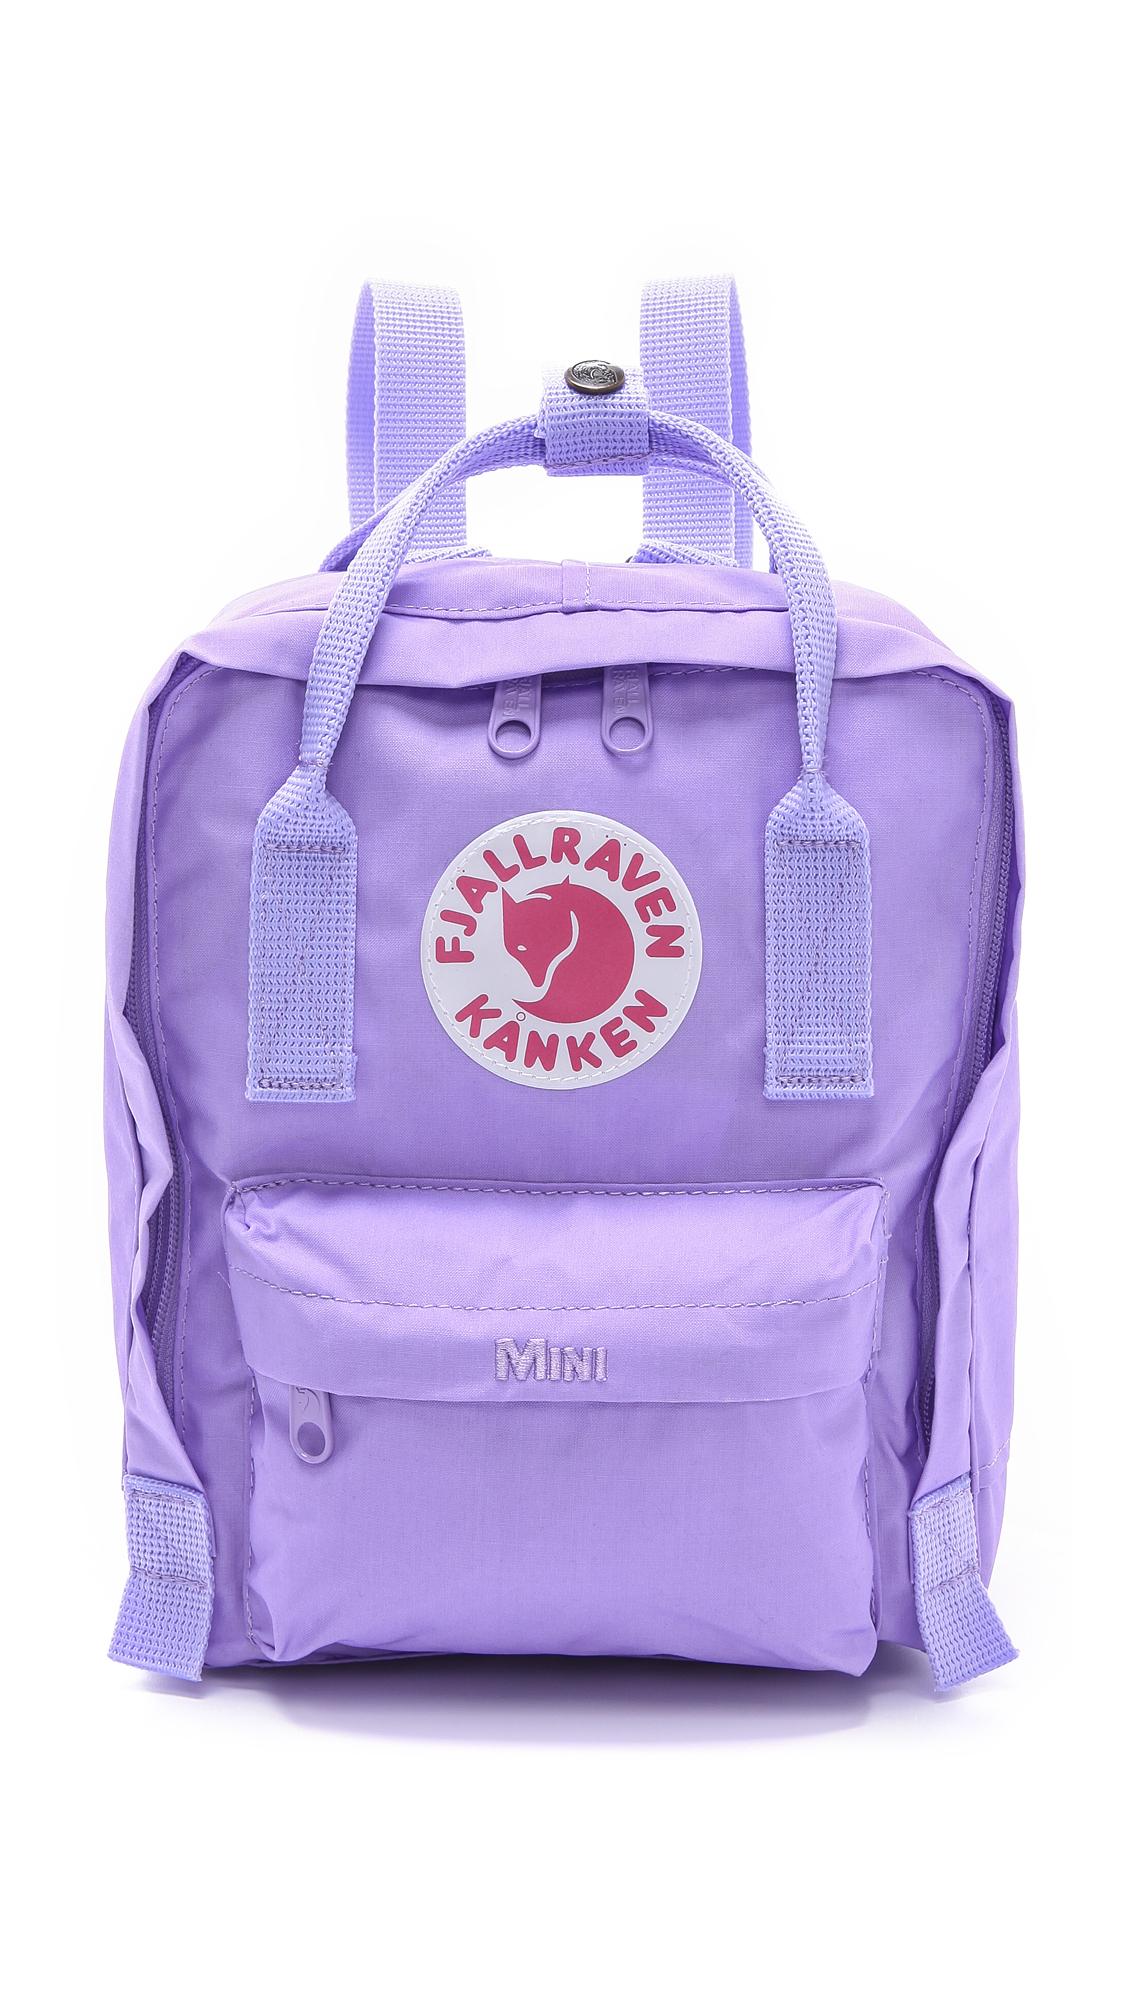 Fjallraven Kanken Mini Backpack in Violet (Purple) - Lyst